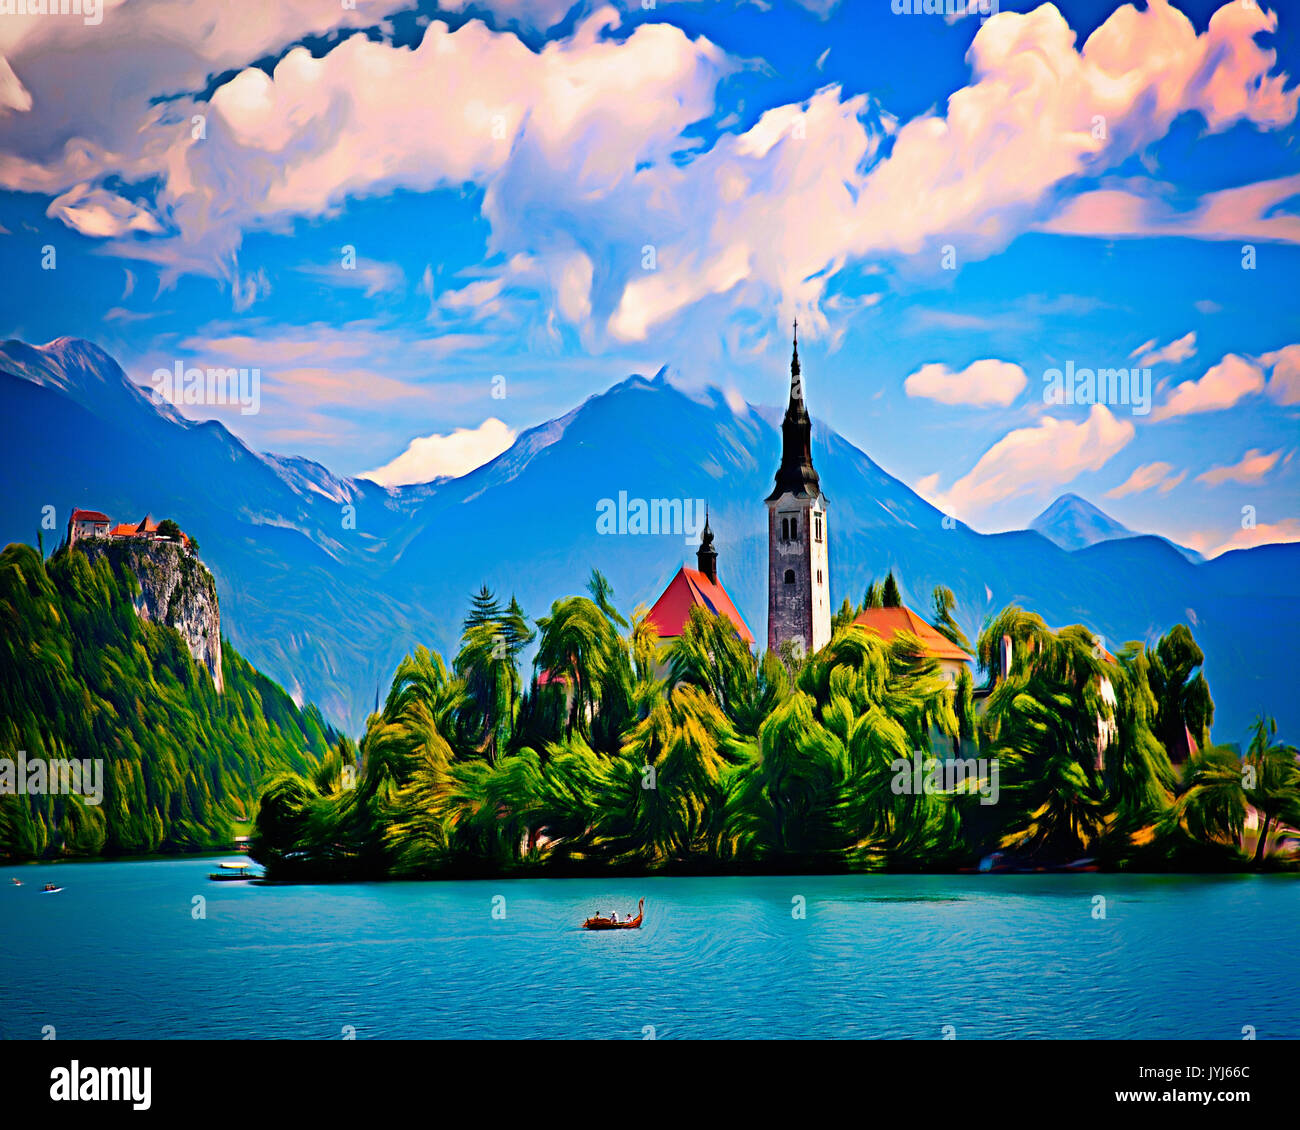 Arte digital: el Lago Bled y la isla es la Iglesia de la Asunción, la región de Gorenjska, Slowenia. Foto de stock